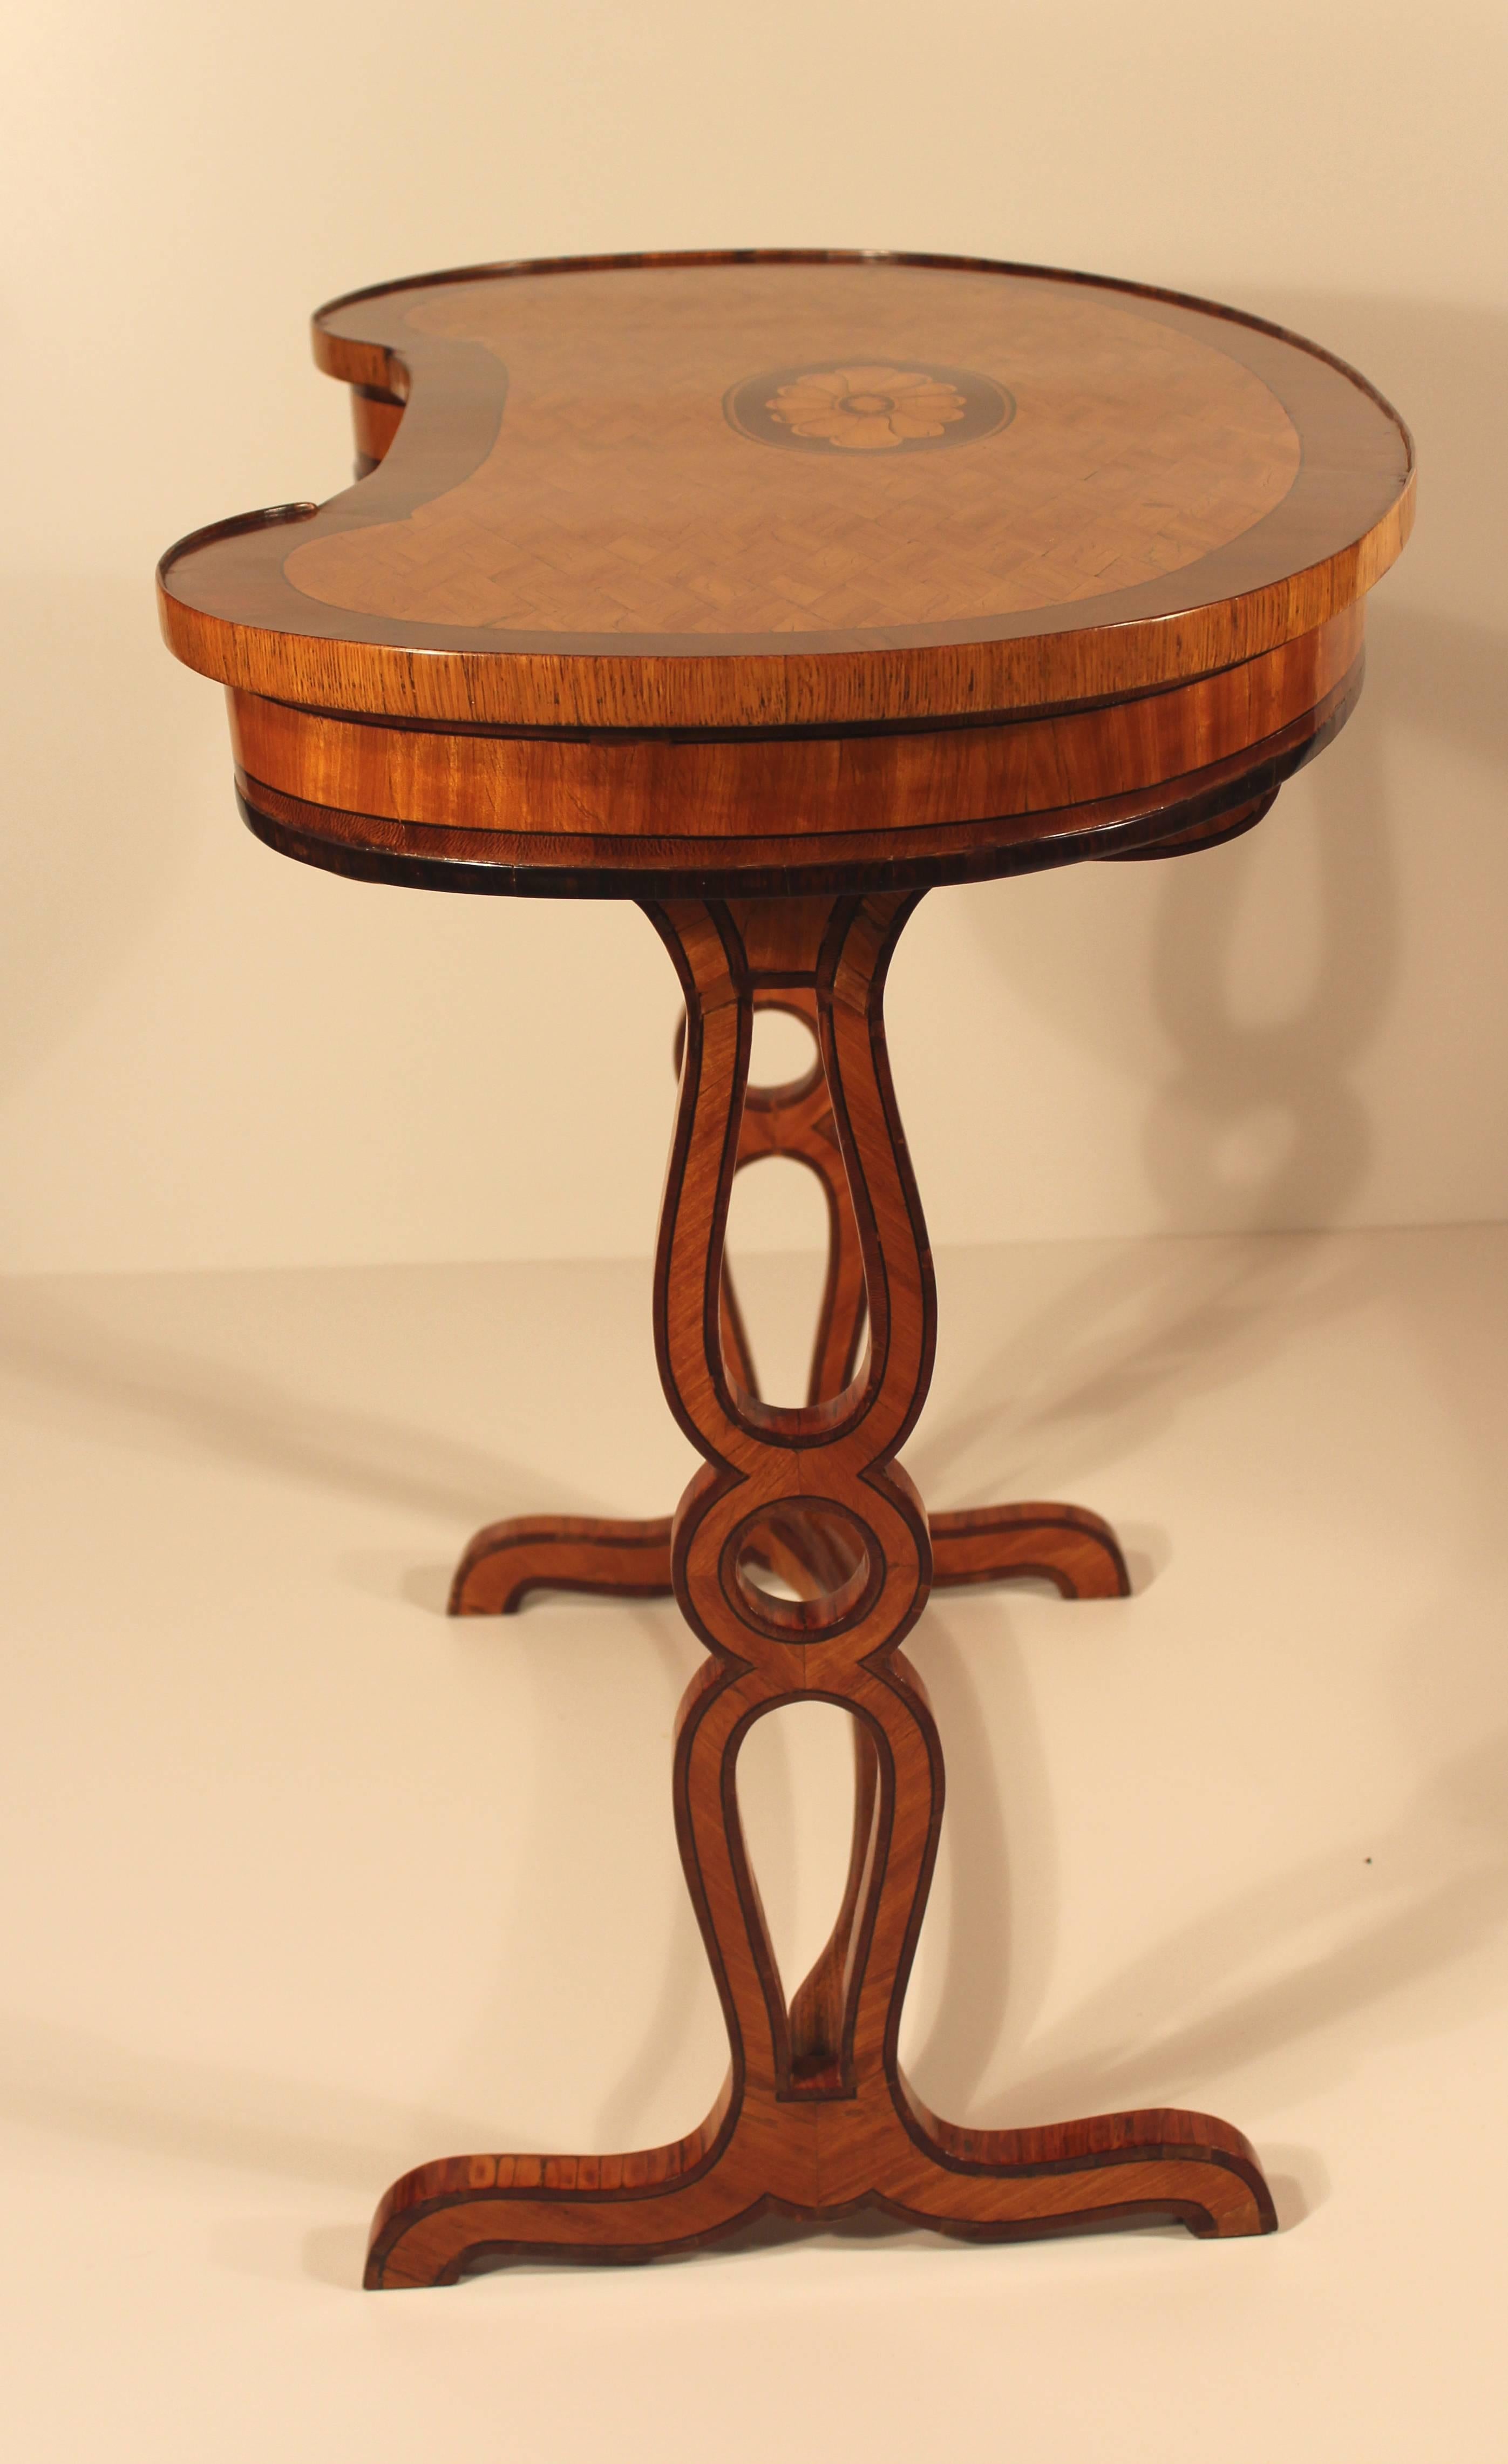 Exquisiter kidneförmiger Tisch aus Kirschbaumholz, Mahagoni und Ulmenholzfurnier, die Platte mit rautenförmiger Intarsienarbeit und einem ovalen Blumenmedaillon. Der Tisch steht auf zwei durchbrochenen Sockeln, die durch eine gerade Strebe